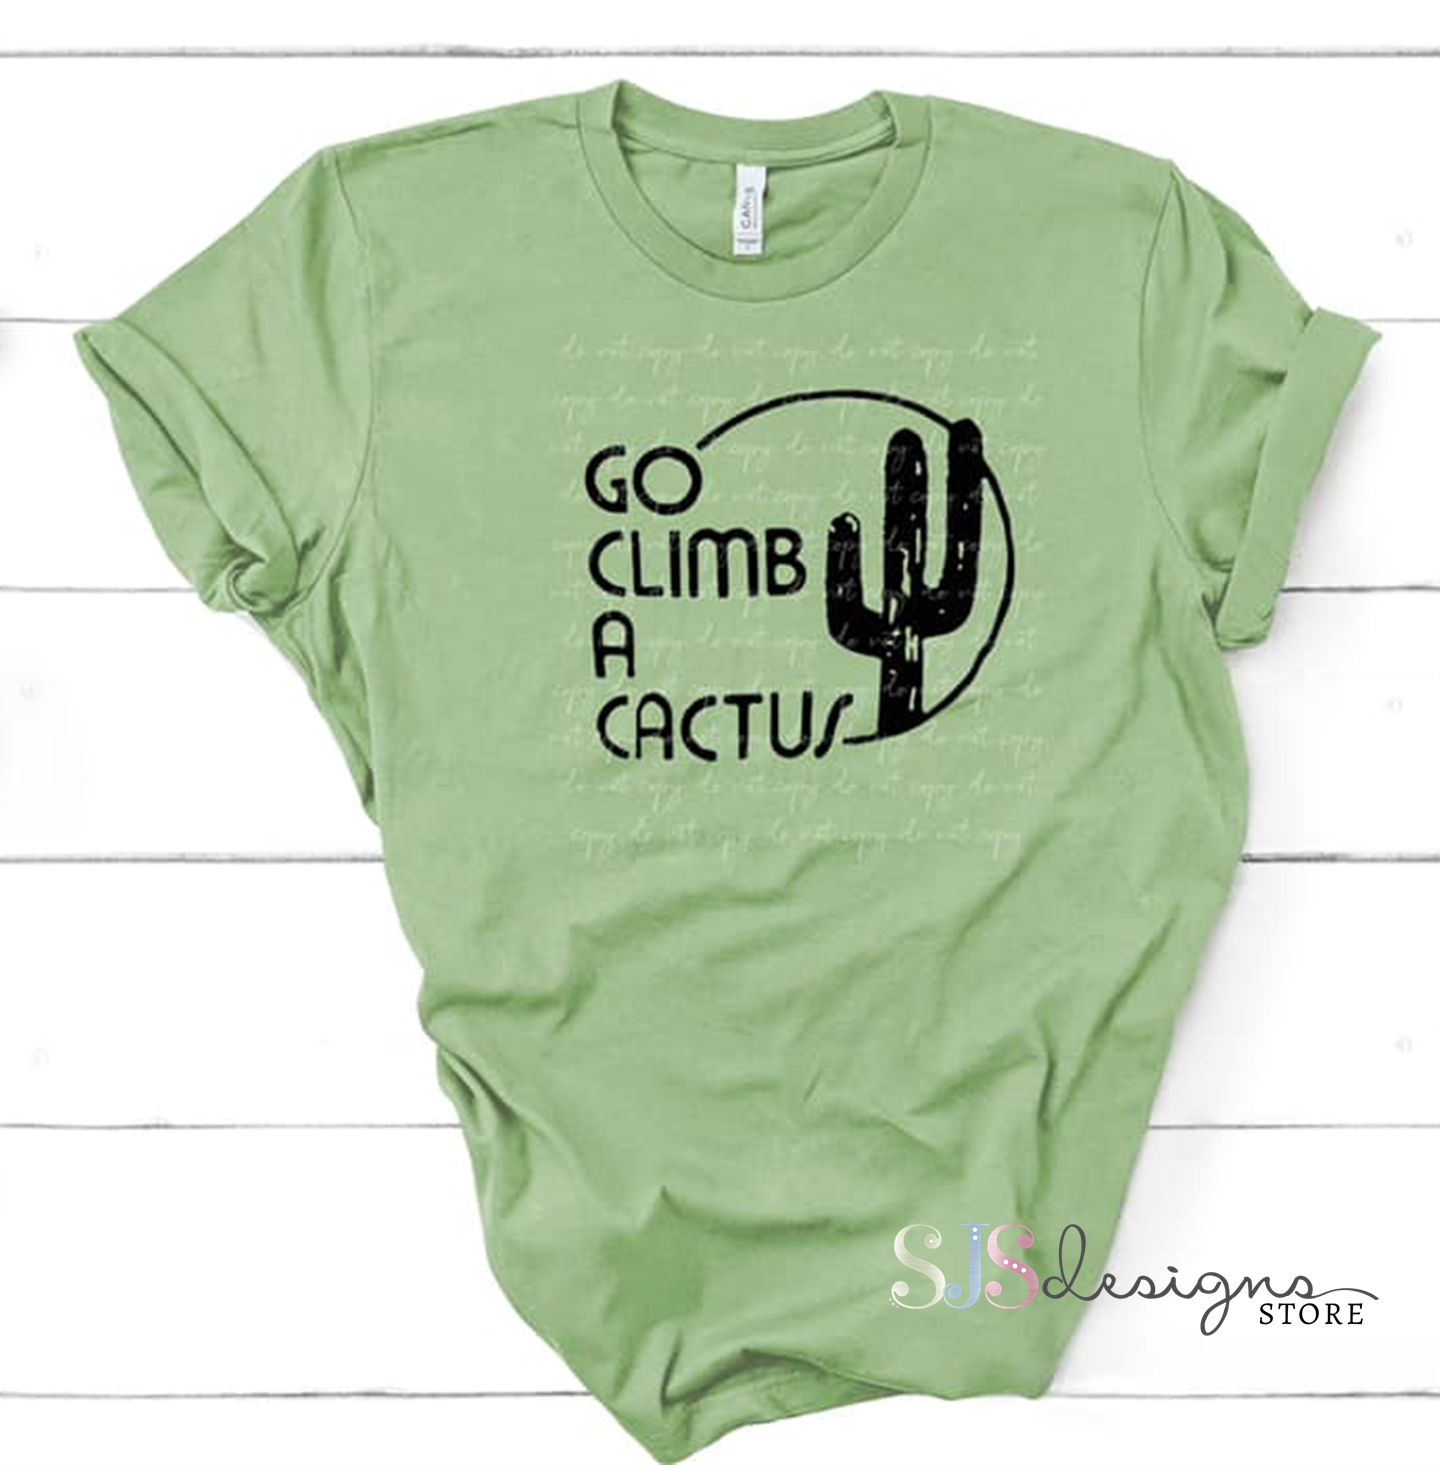 Go Climb a Cactus Shirt